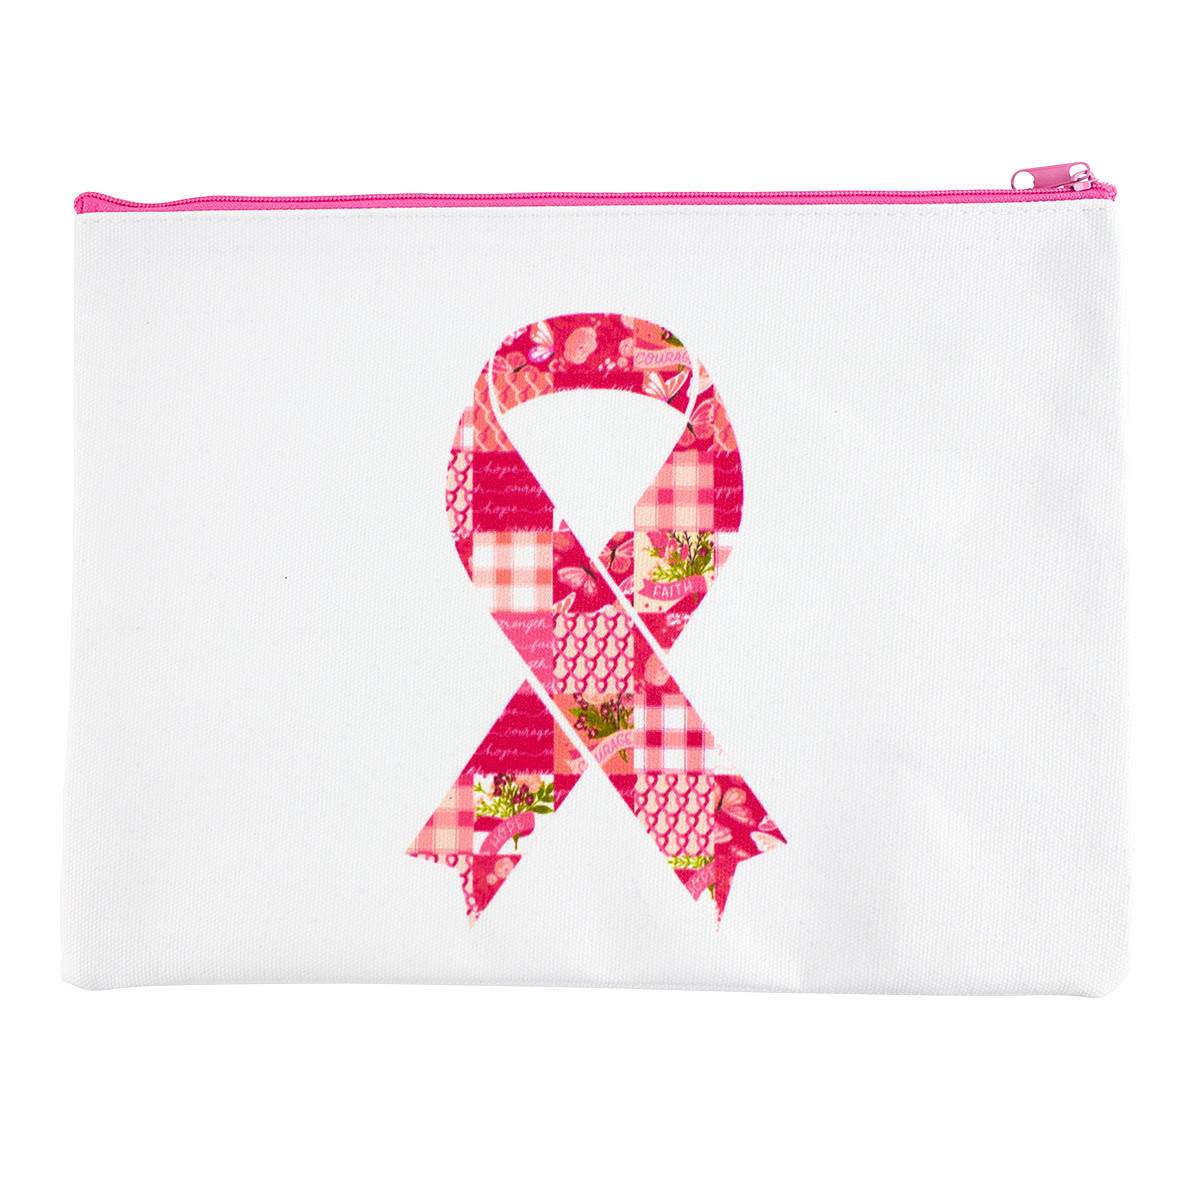 Hot Pink Fabric Awareness Ribbons - 250 ribbons / bag